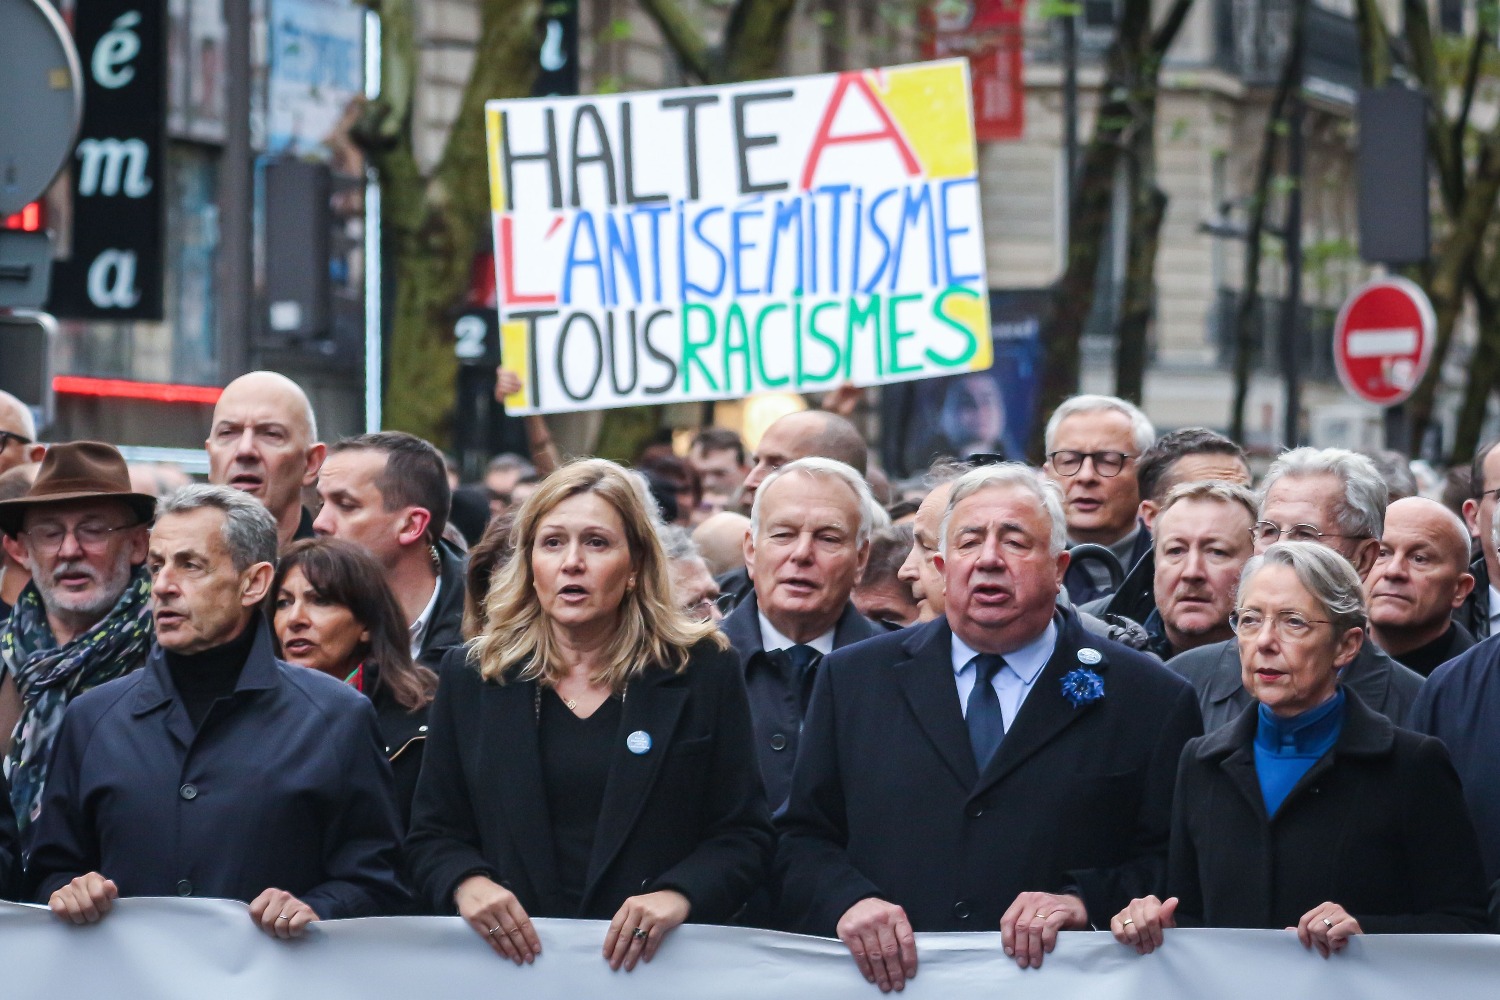 Малолетним насильникам во Франции предъявлены обвинения, преступление стало частью предвыборной кампании